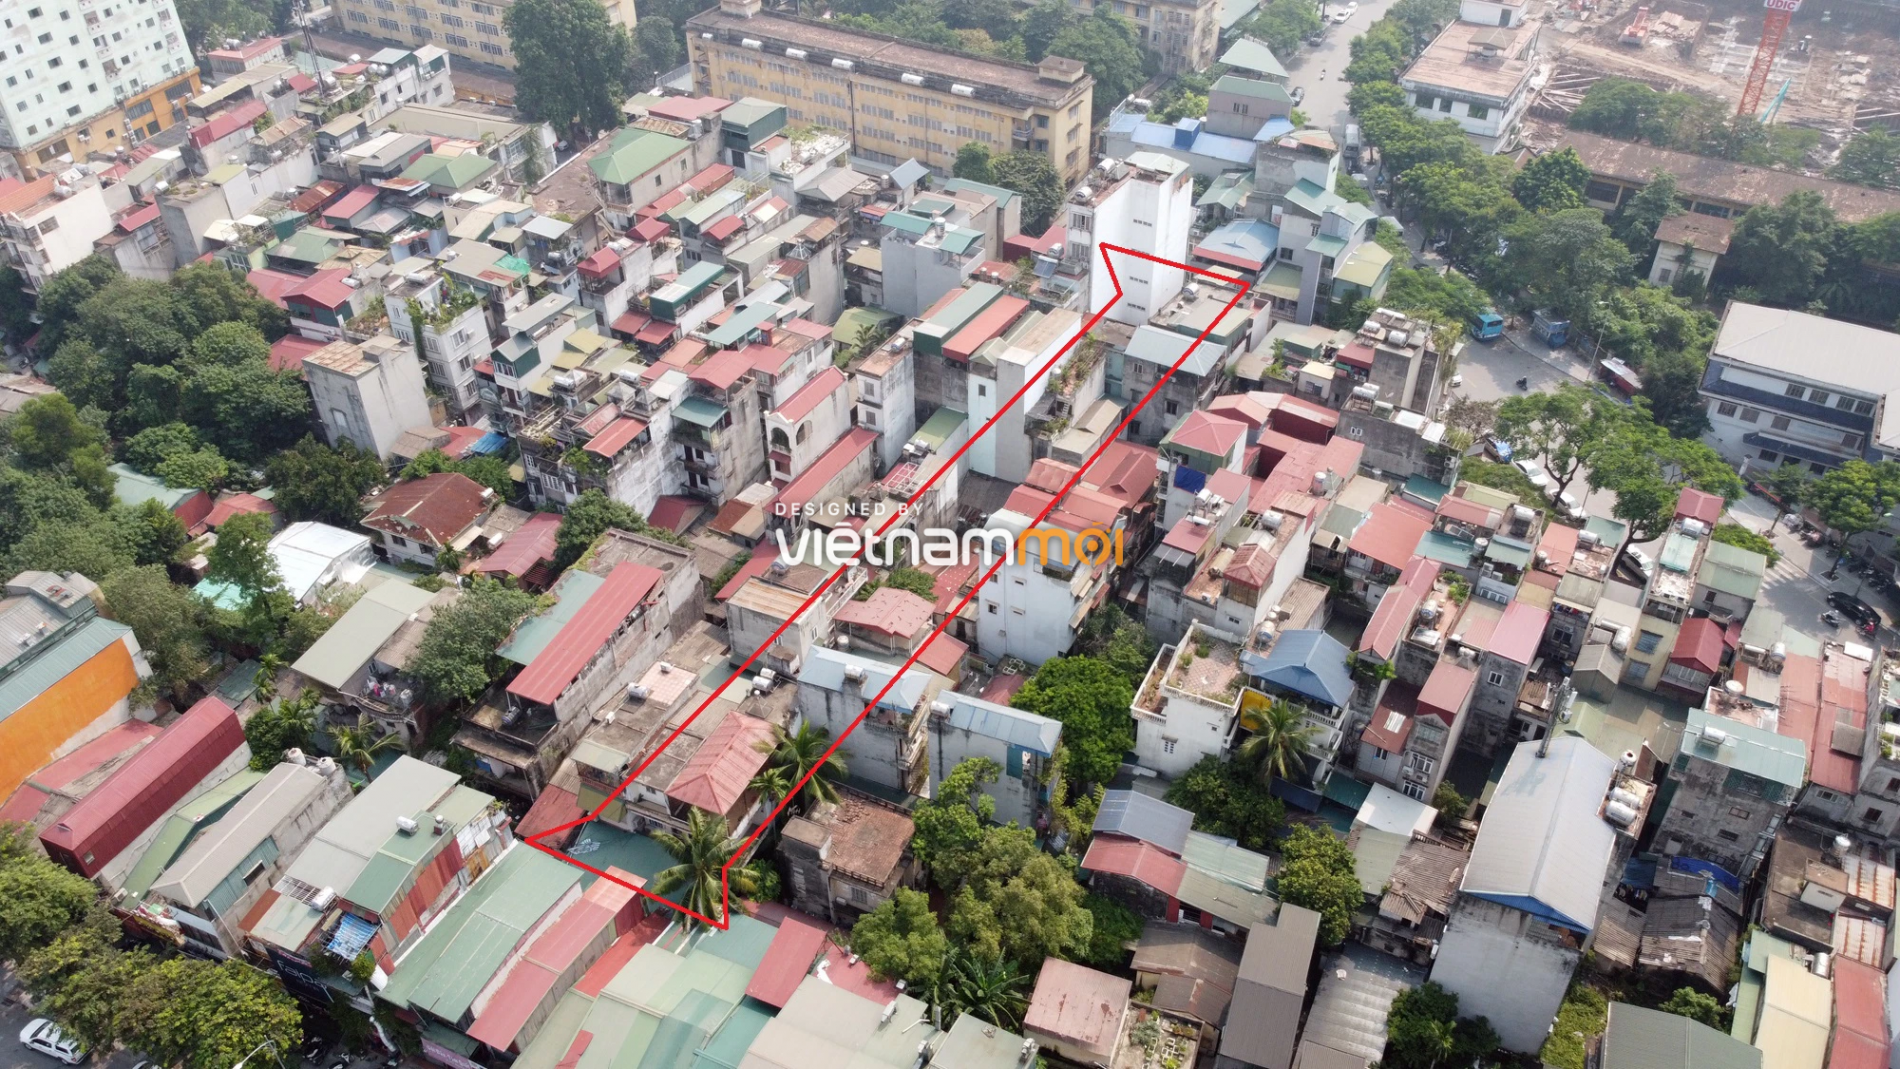 Những khu đất sắp thu hồi để mở đường ở quận Hai Bà Trưng, Hà Nội (phần 1) - Ảnh 5.